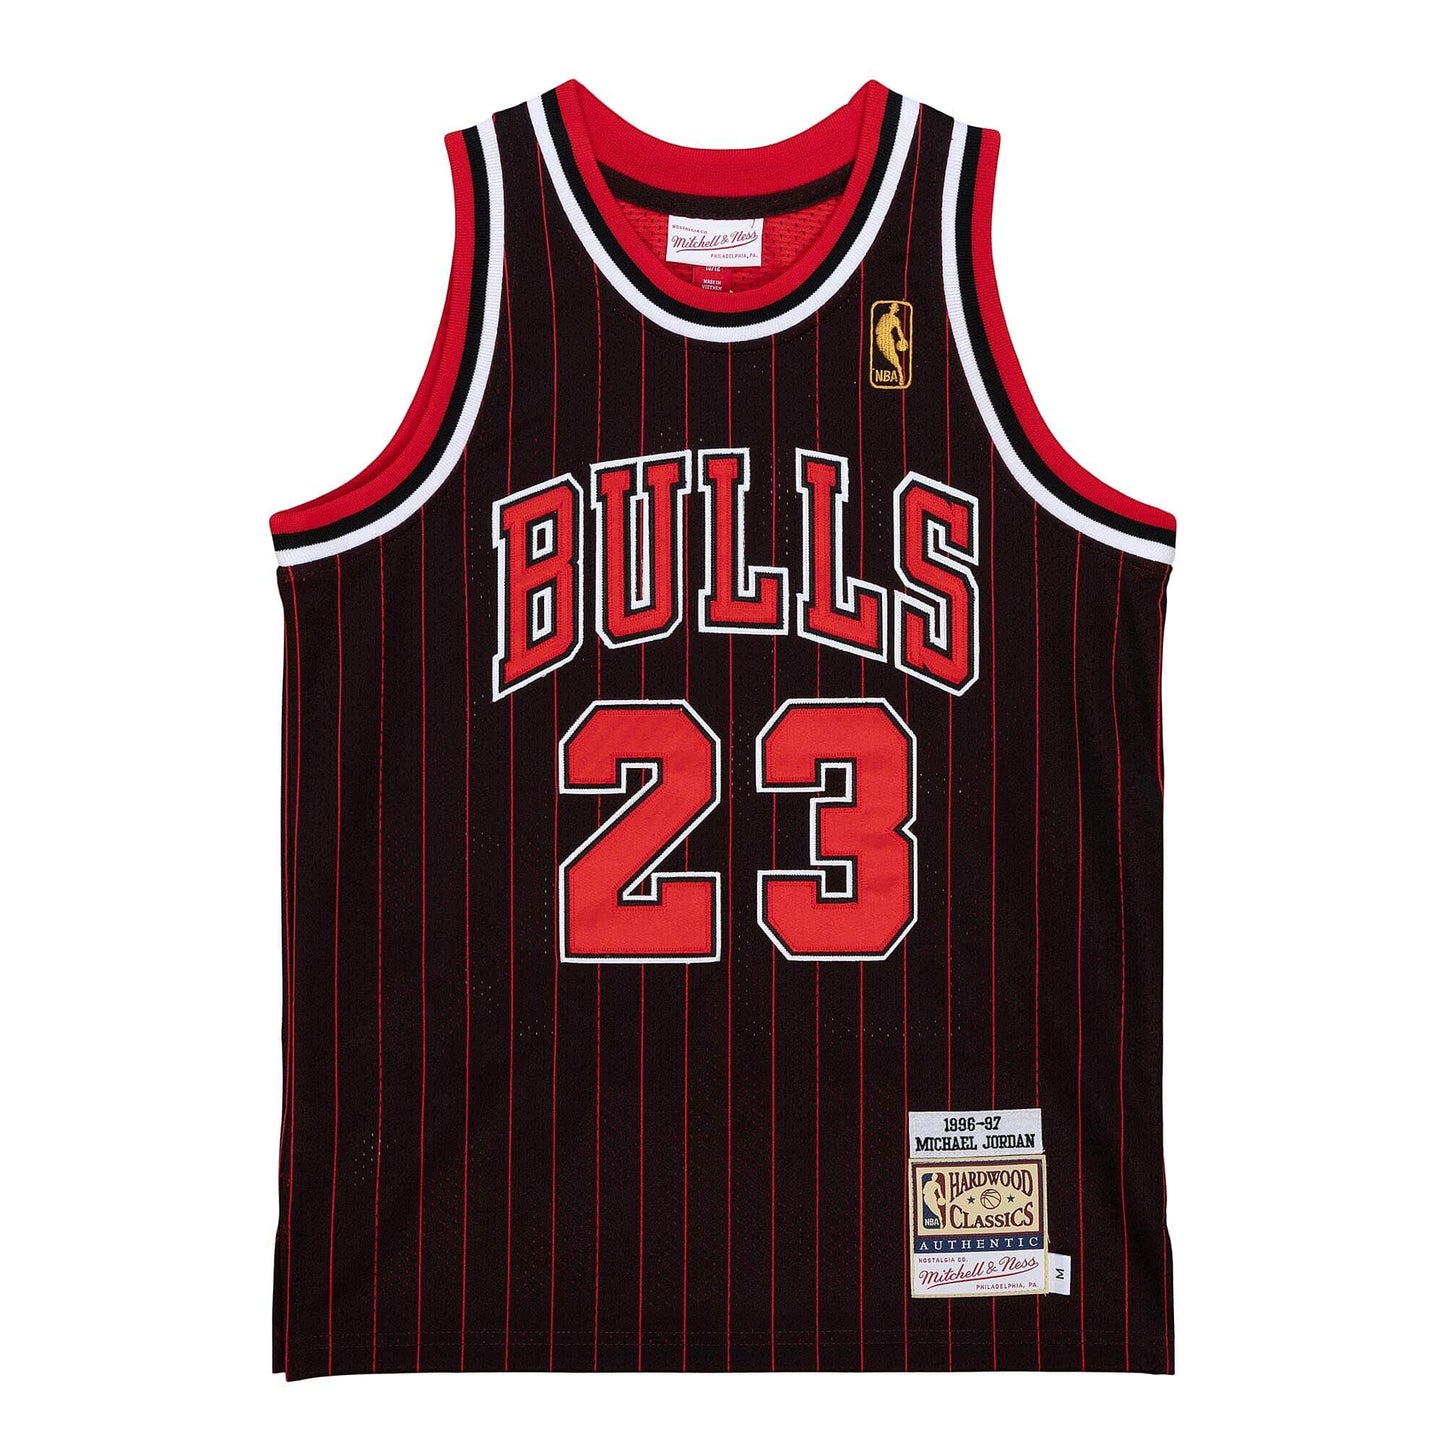 Authentic Jordans 2 Michael Jordans Chicago Bulls Jersey